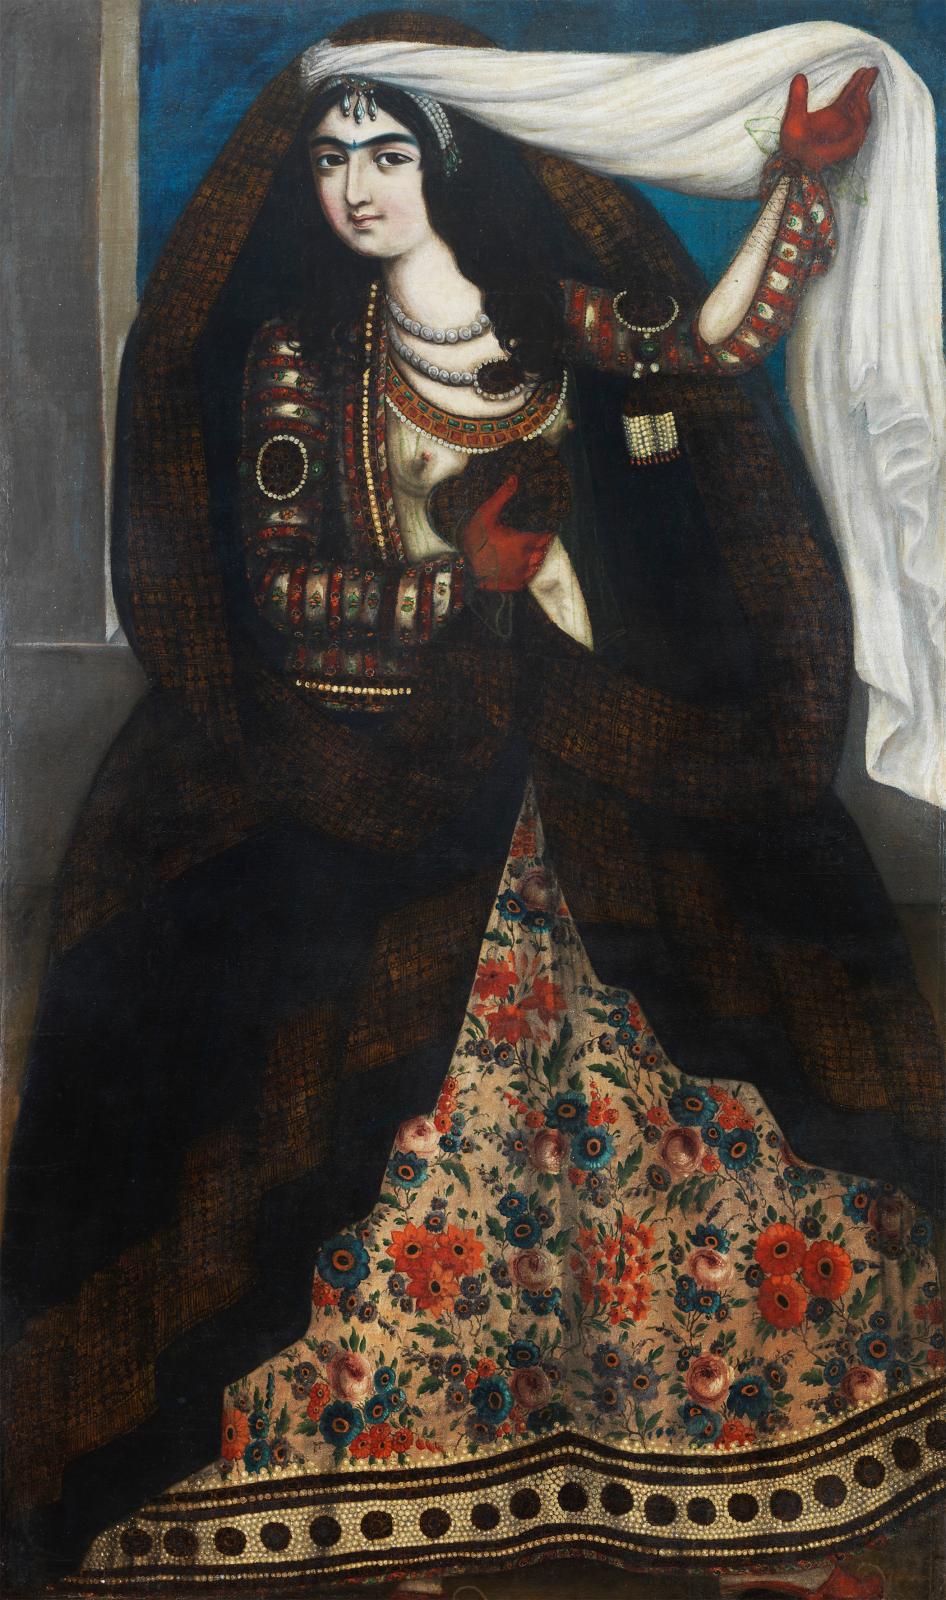 Anonyme, Princesse au chador, vers 1840-1850, huile sur toile (détail), collection particulière, Genève. 